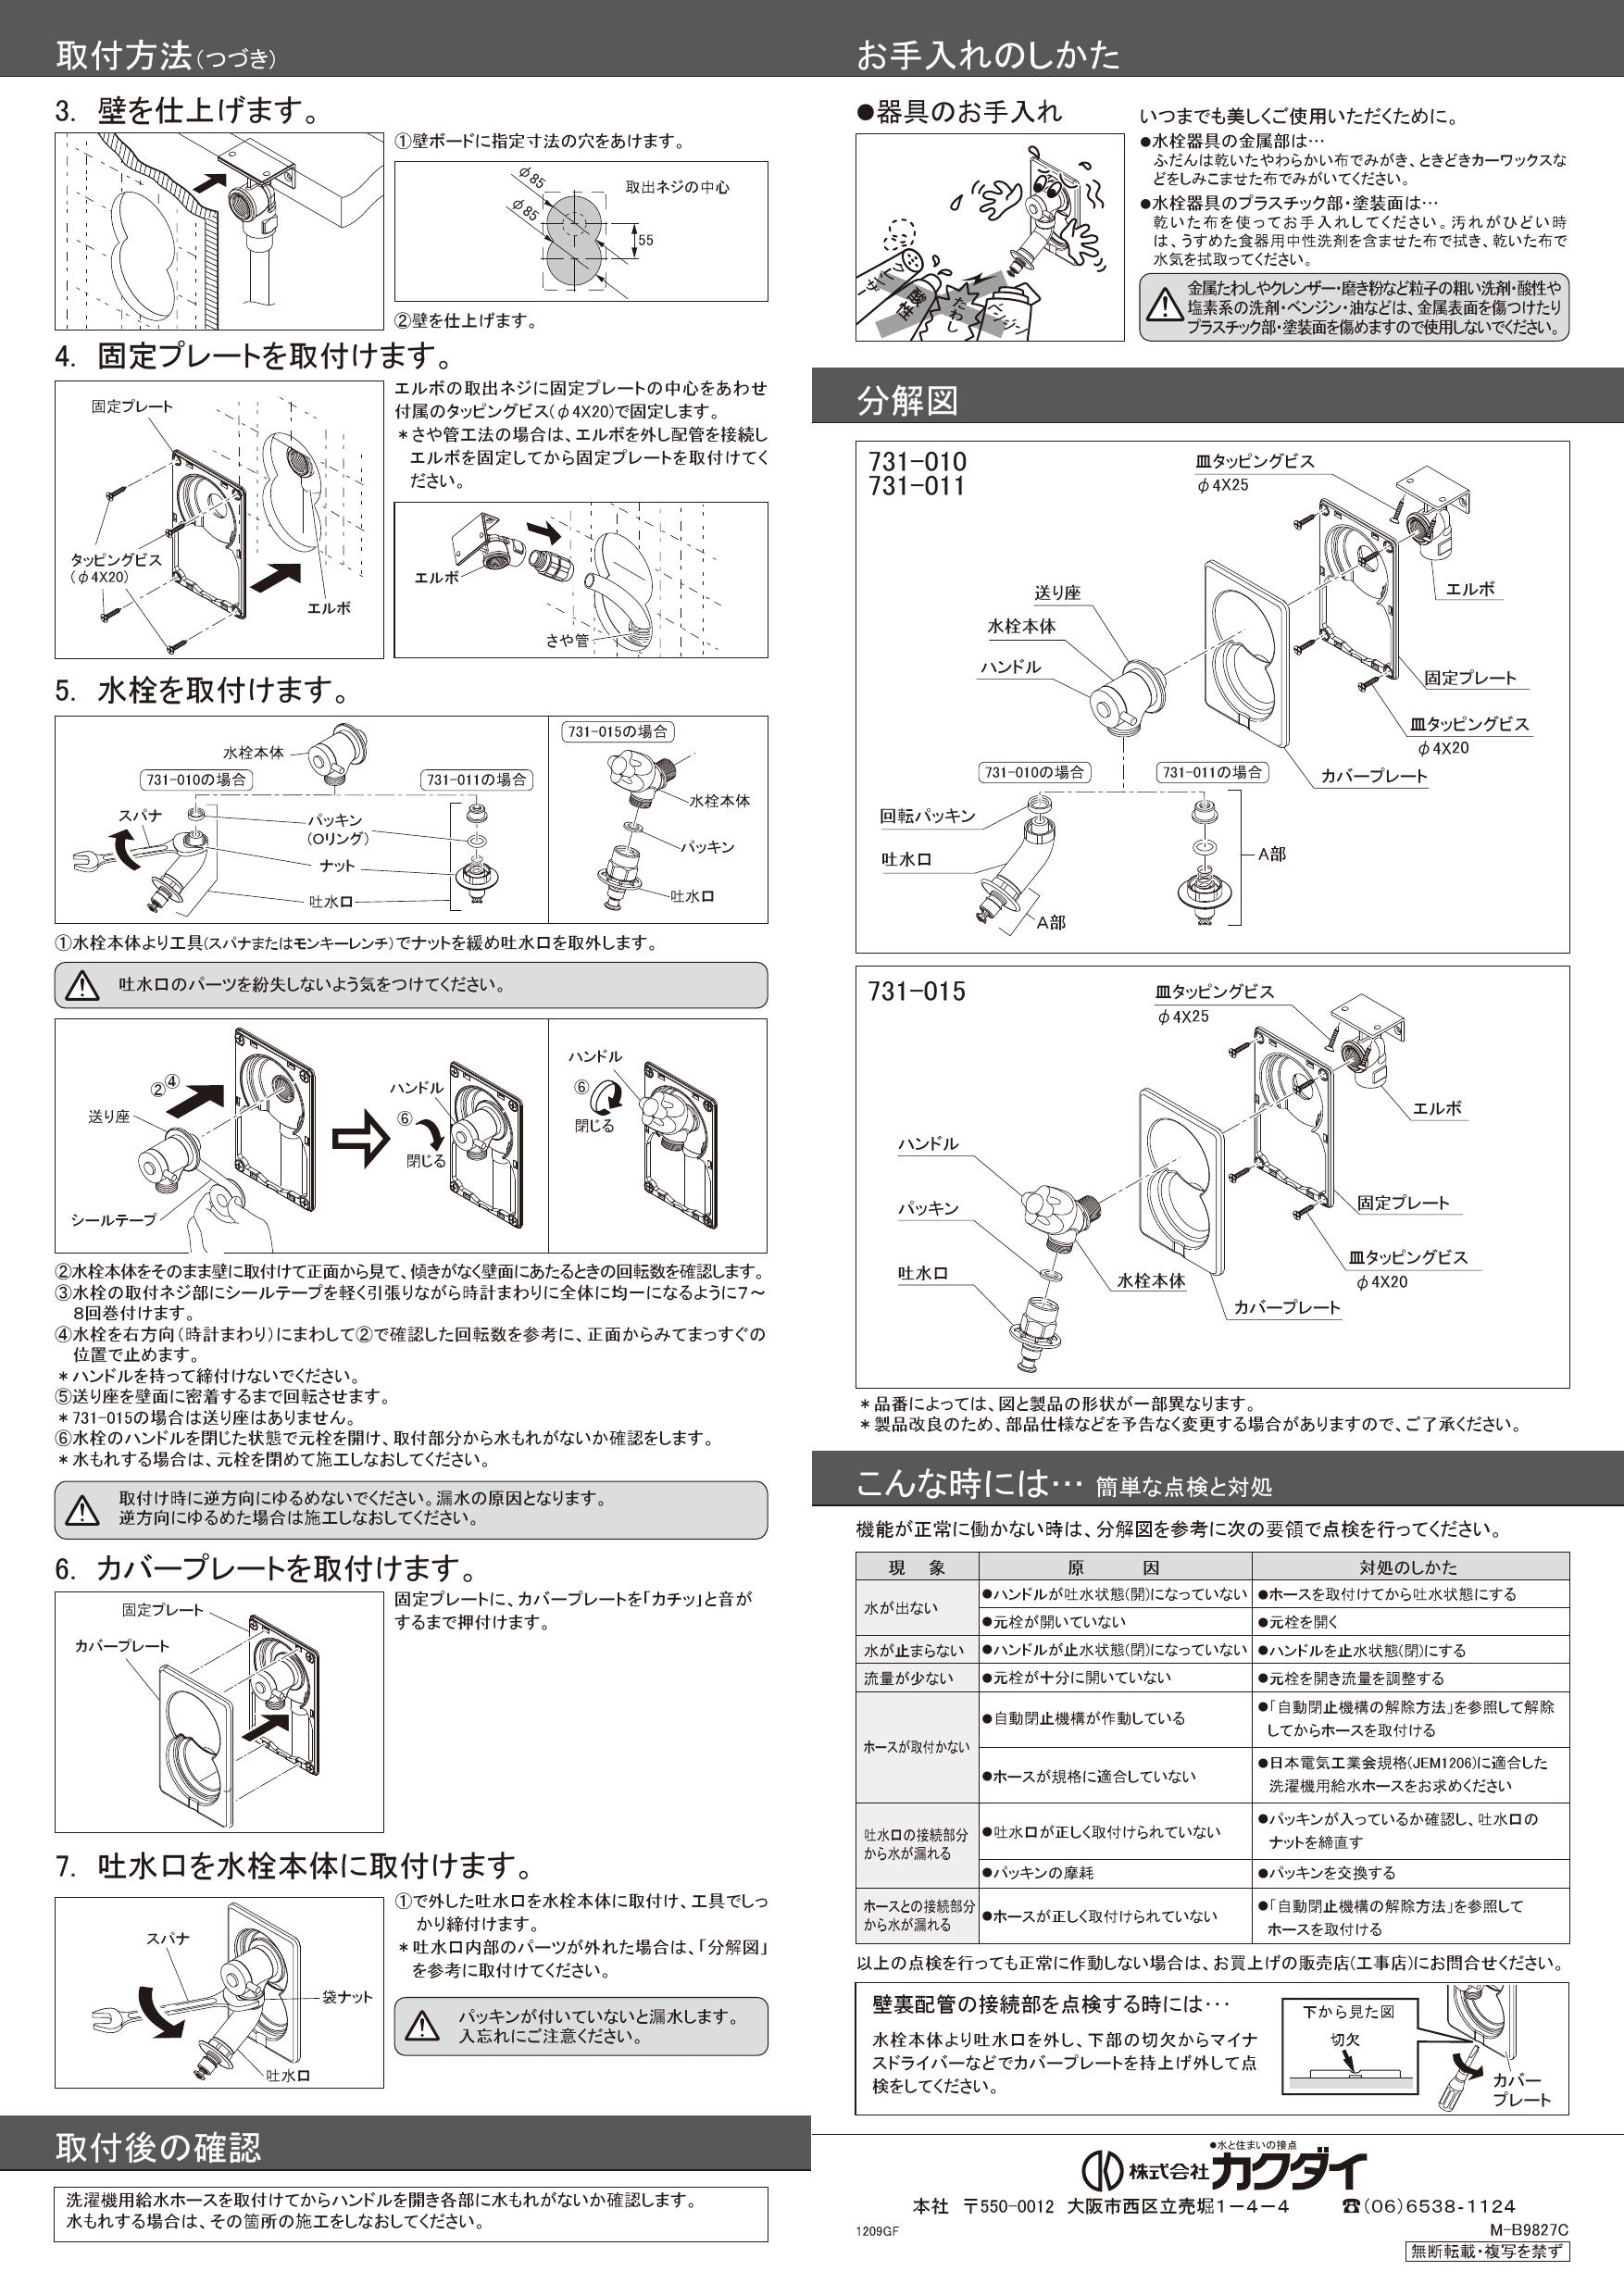 オンラインショップ】 カクダイ KAKUDAI 洗濯機用水栓 731-011